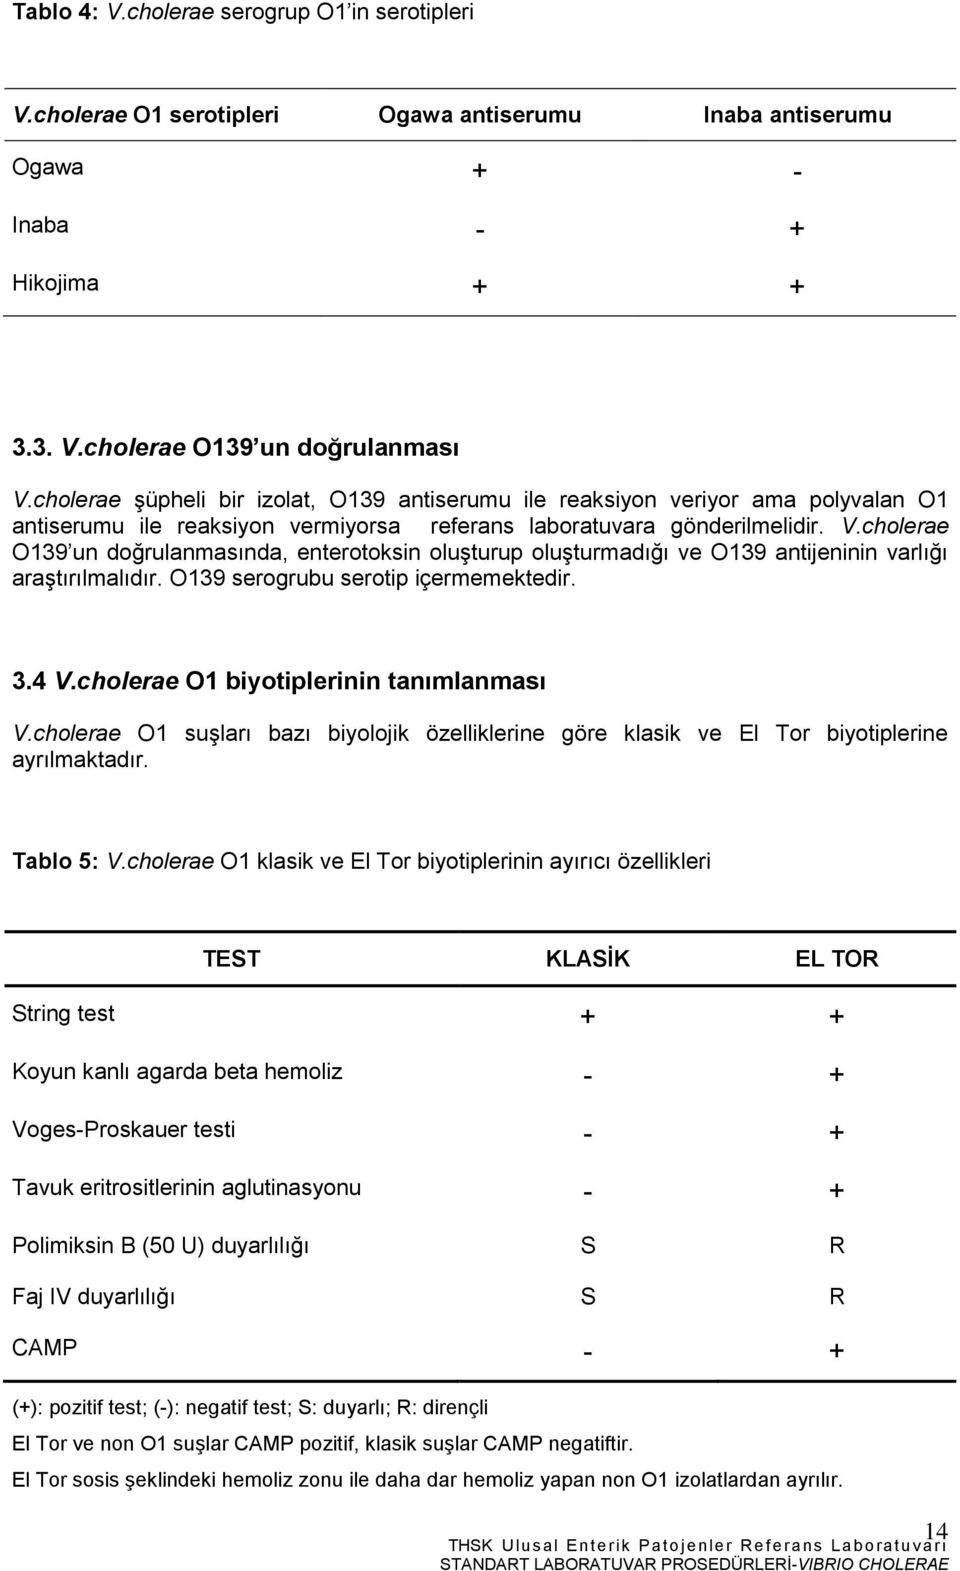 cholerae O139 un doğrulanmasında, enterotoksin oluşturup oluşturmadığı ve O139 antijeninin varlığı araştırılmalıdır. O139 serogrubu serotip içermemektedir. 3.4 V.